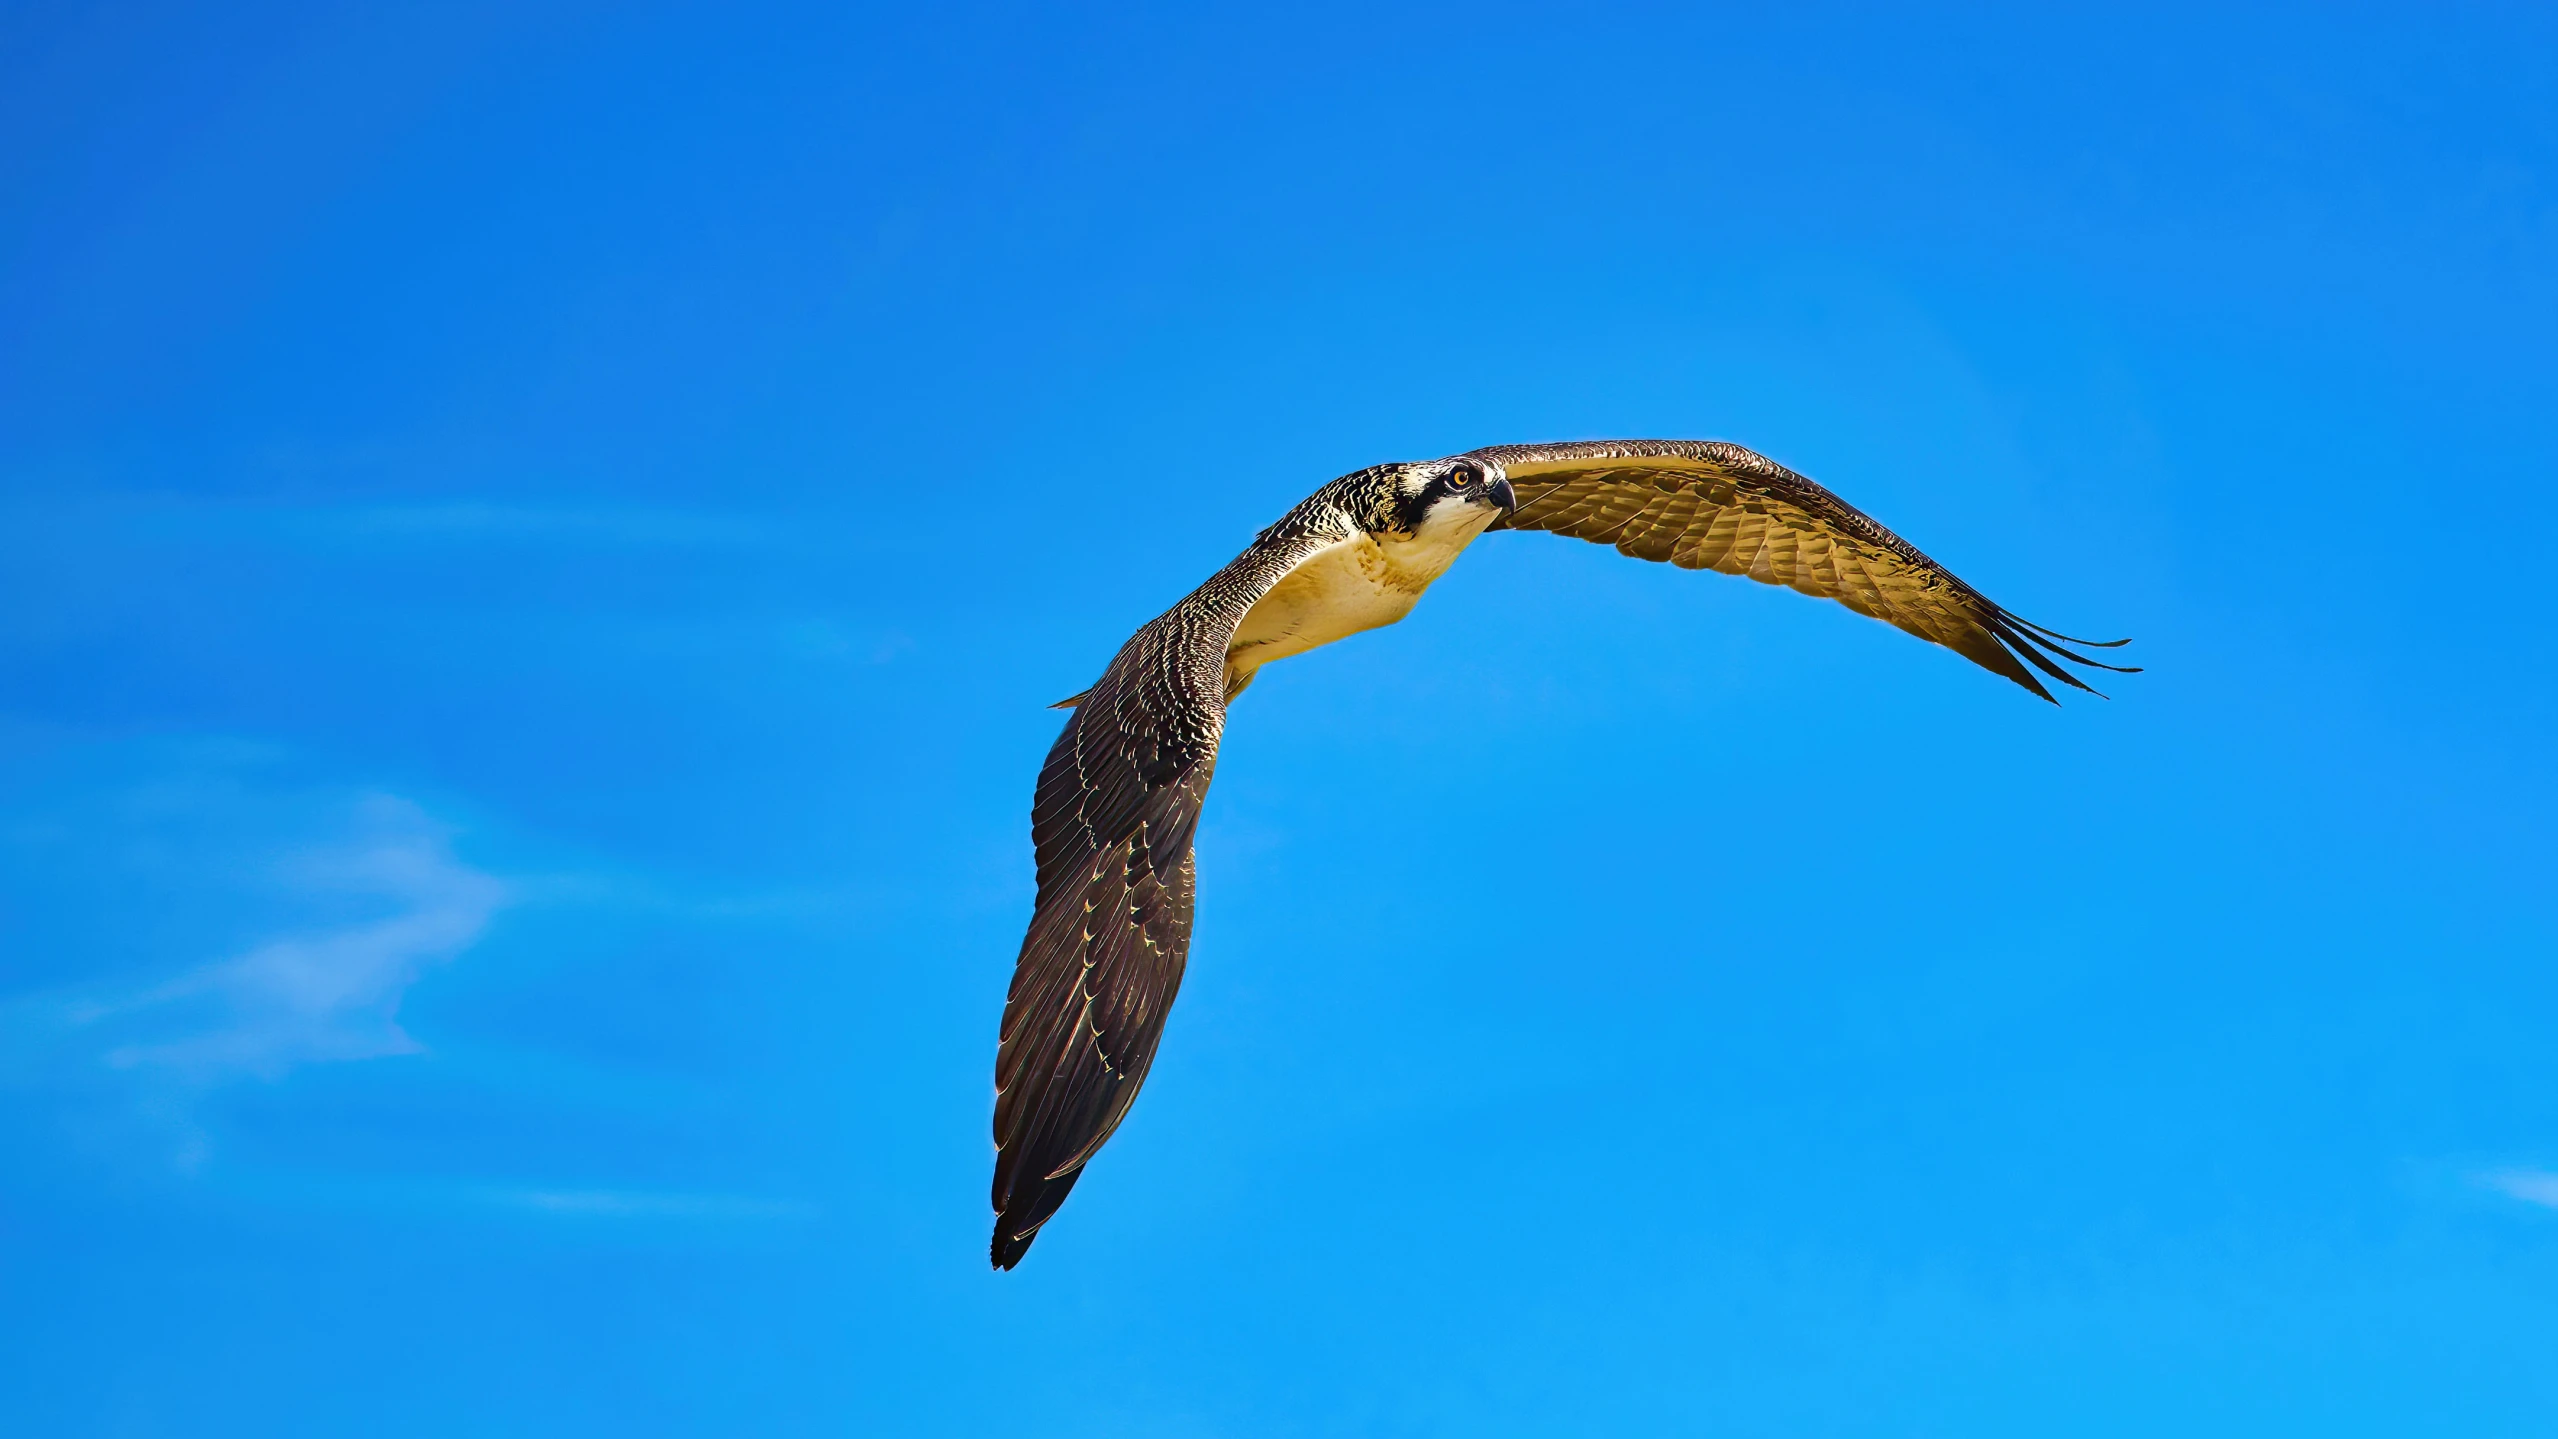 a bird is flying in a blue sky